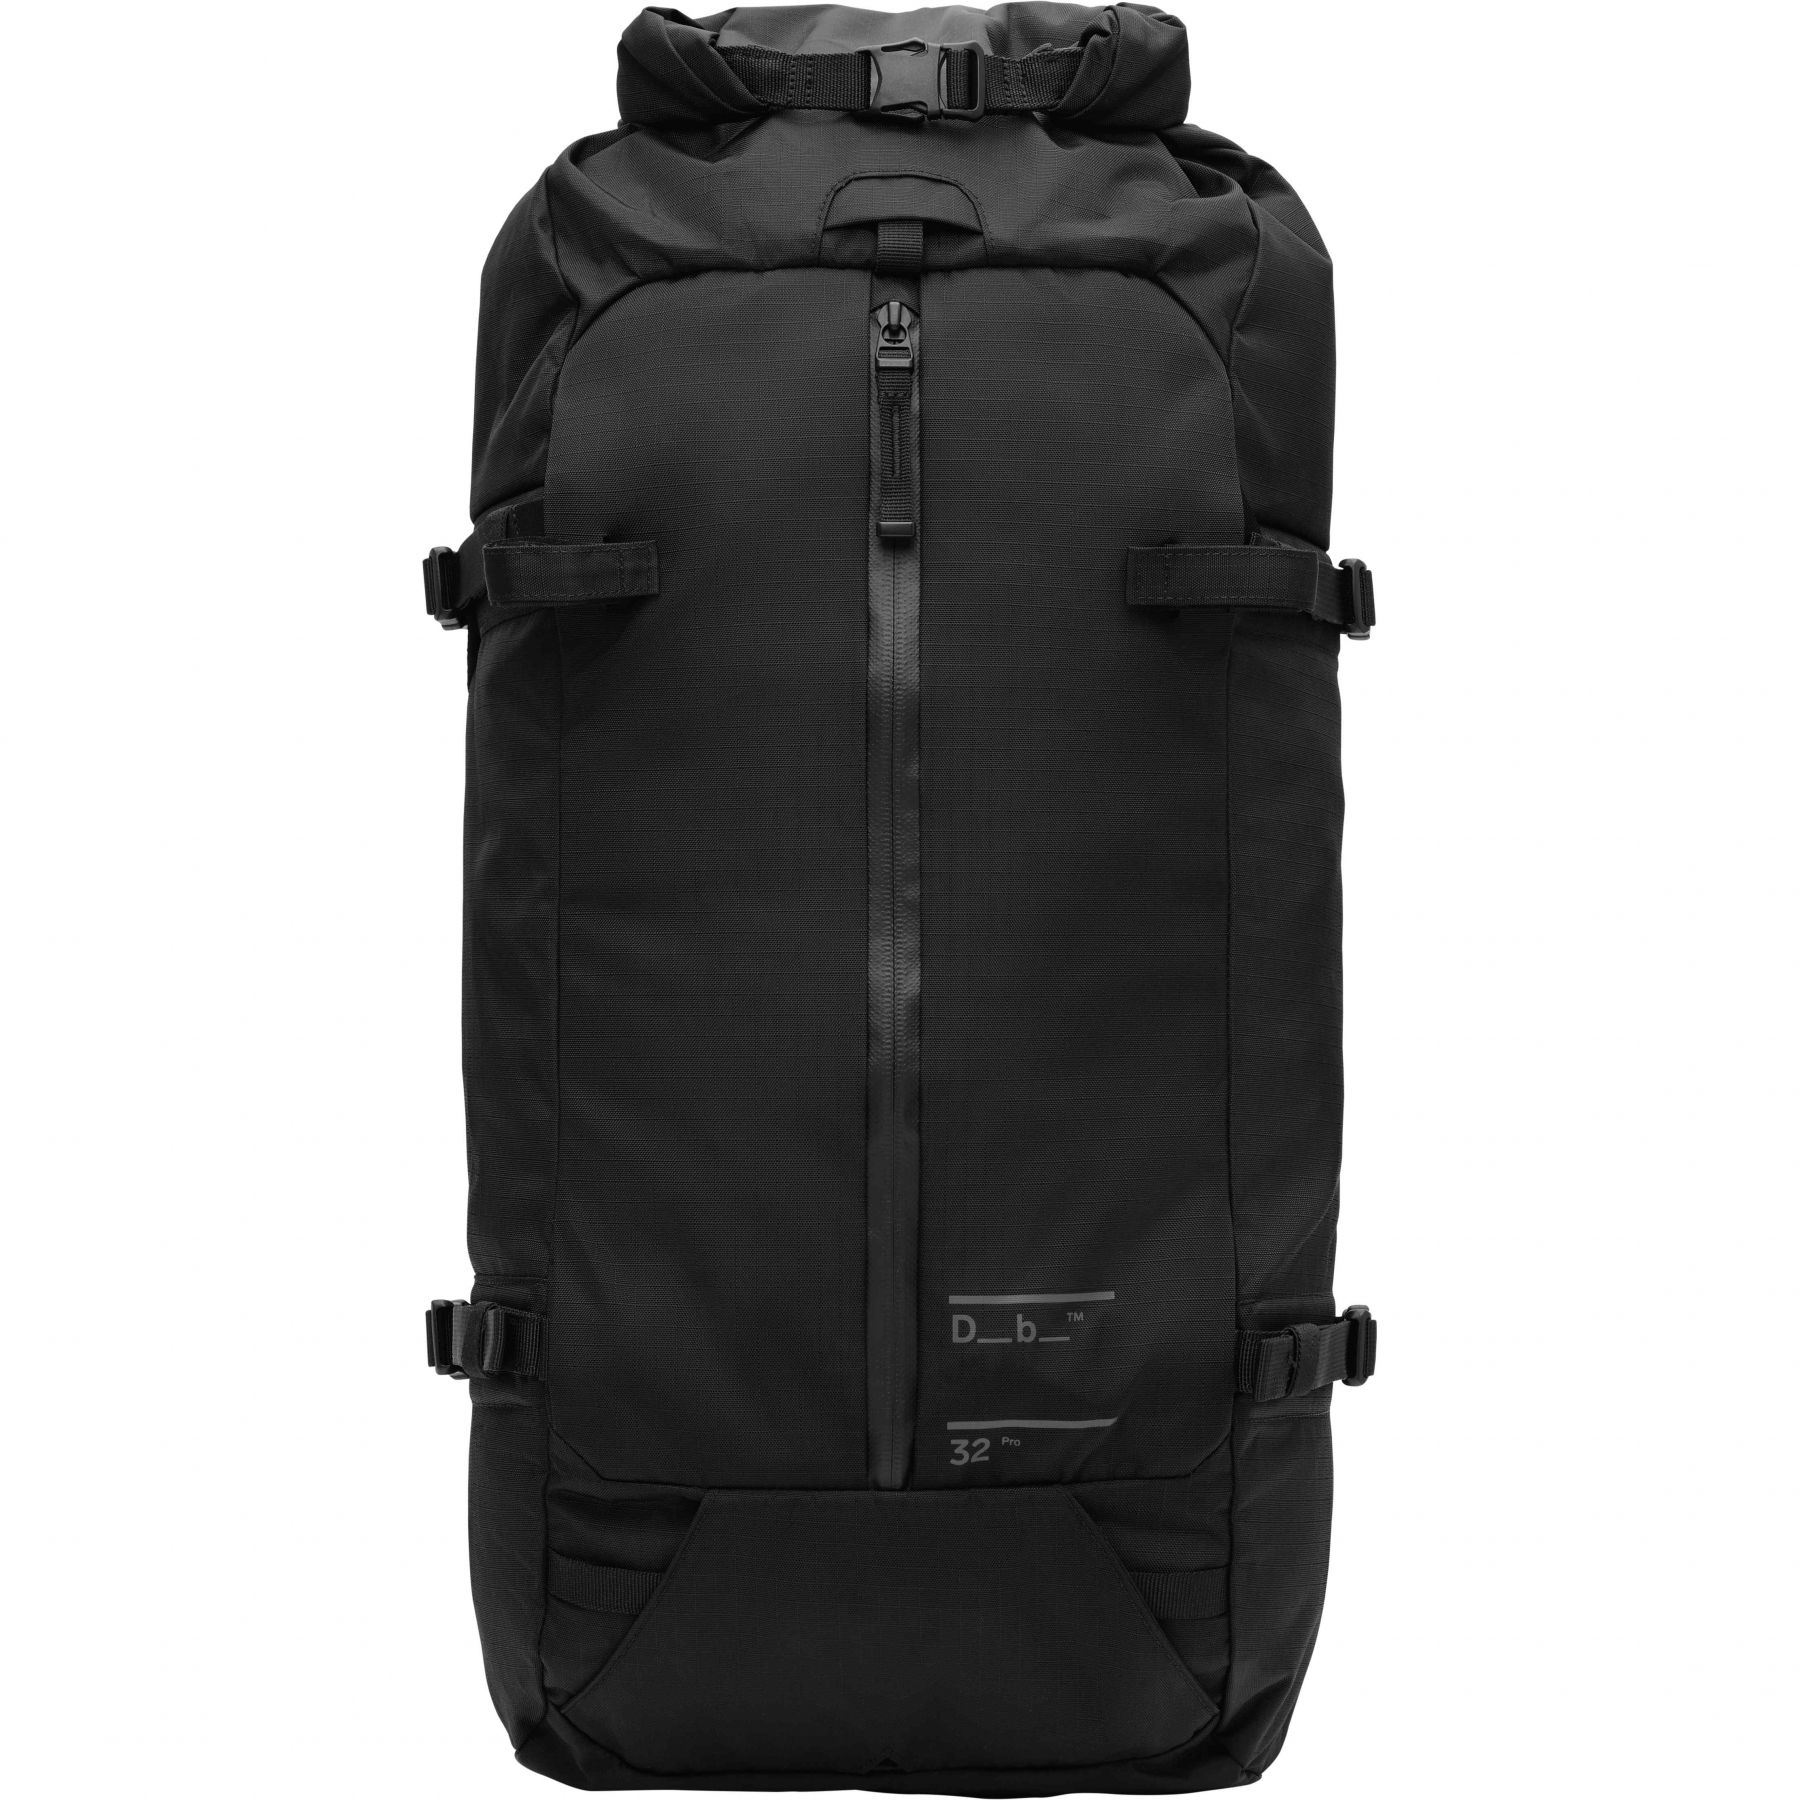 Brug Db Snow Pro, 32L, rygsæk, black out til en forbedret oplevelse